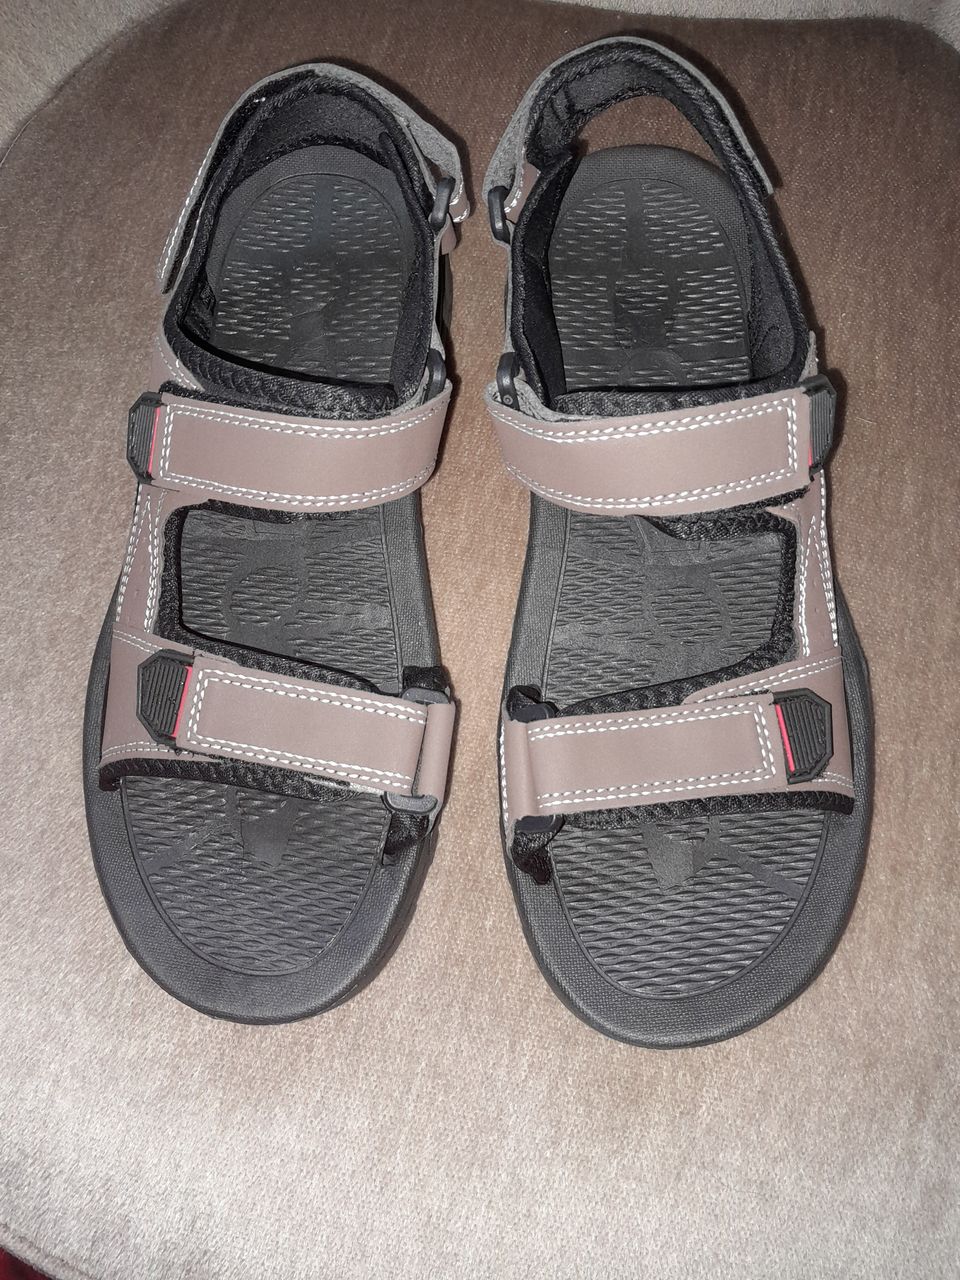 Uudet miesten kesälenkkarit/sandaalit